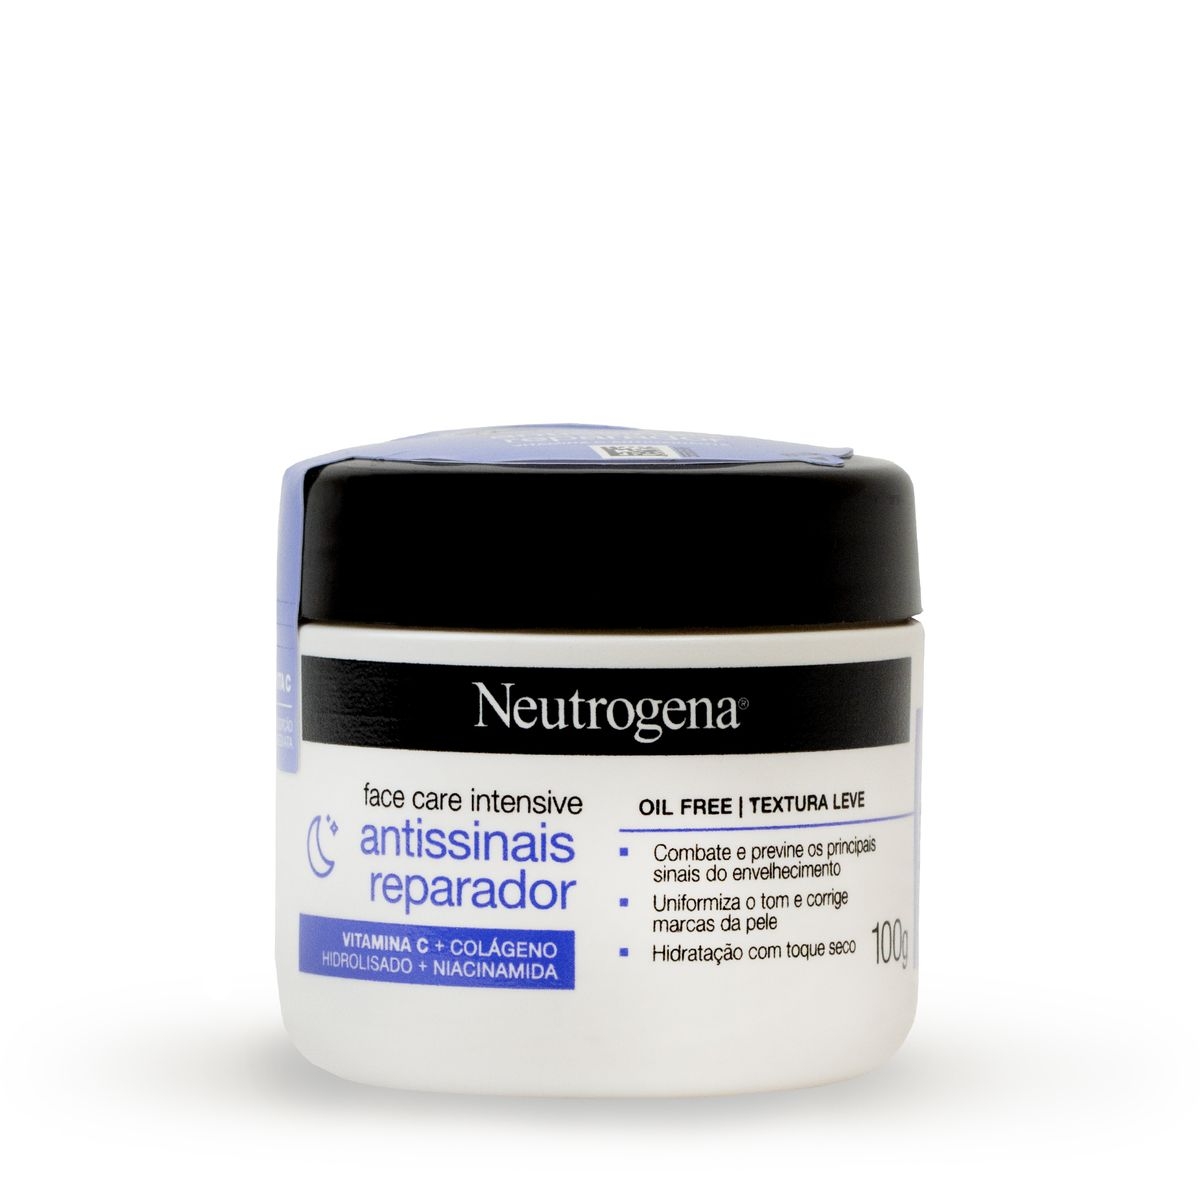 Creme Facial Neutrogena Face Care Intensive Antissinais Reparador com 100g 100g